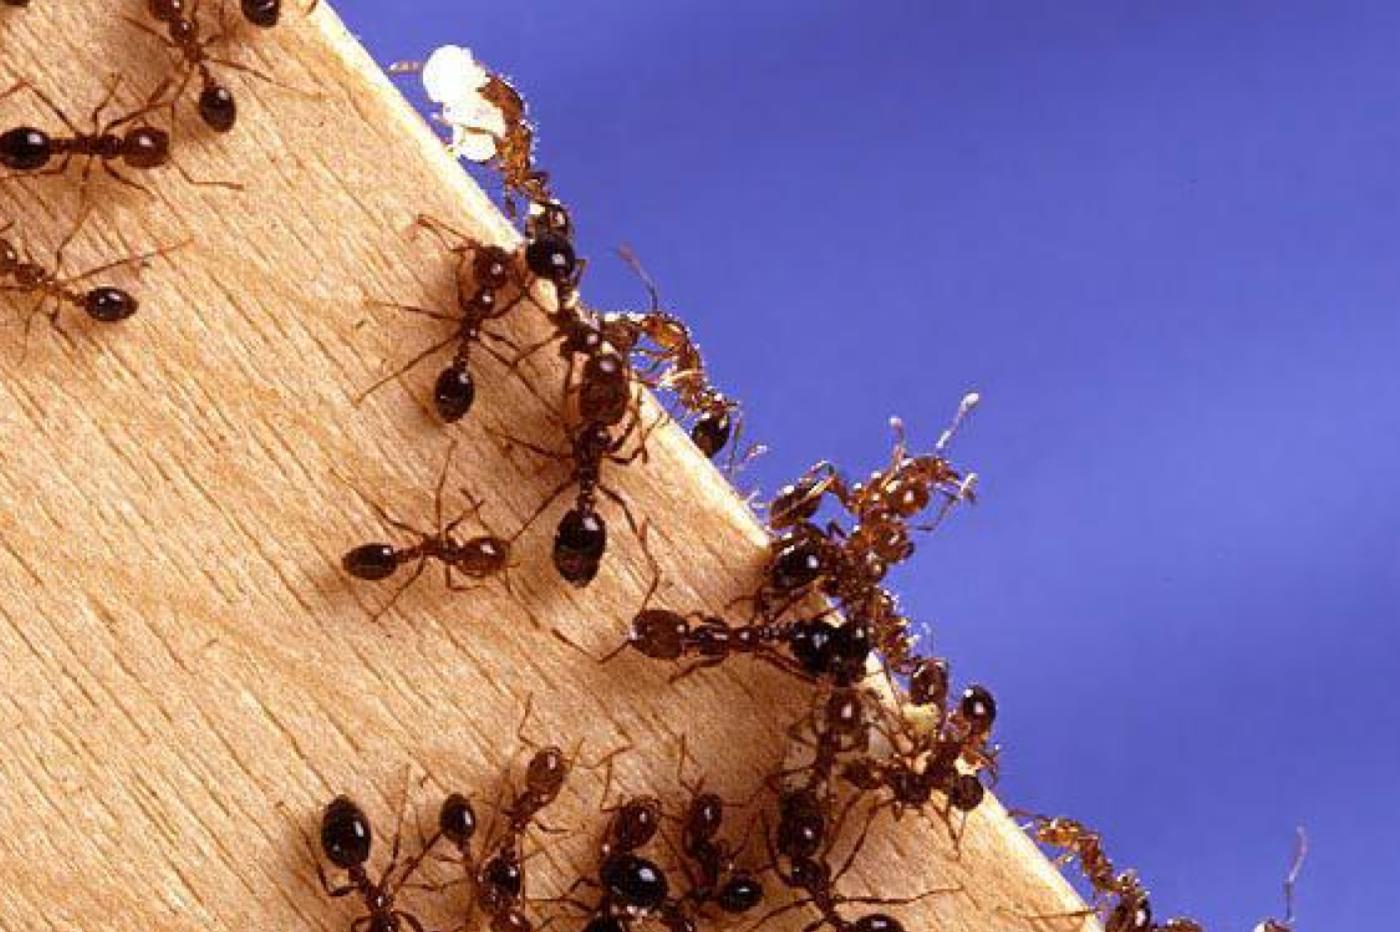 Des fourmis de feu